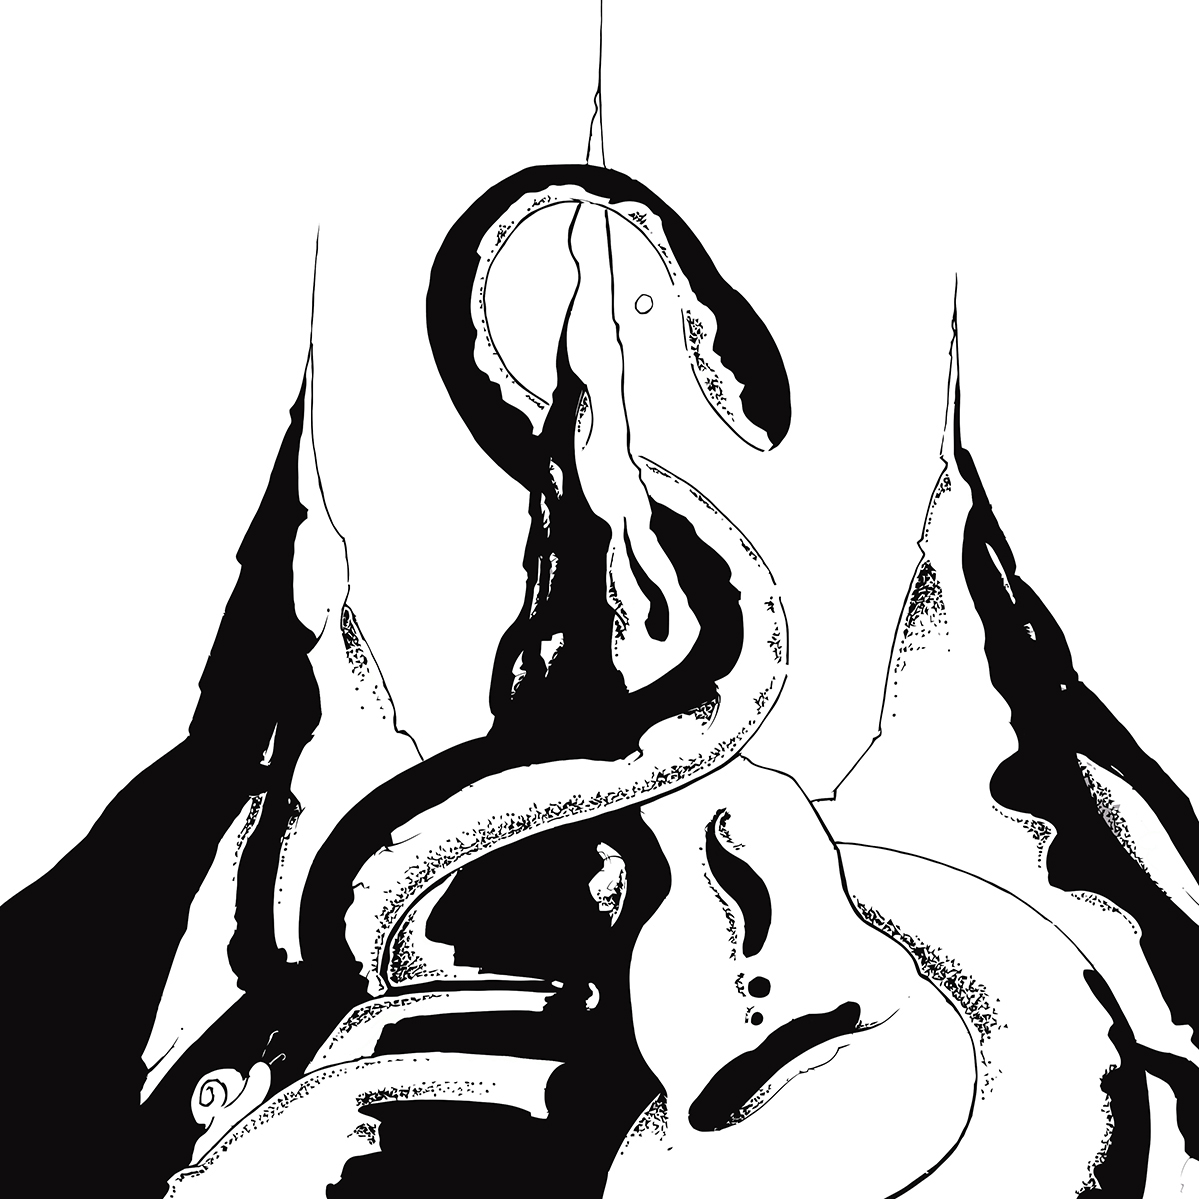 Reptilian Reimagined Subatomica Remixing promo work album cover